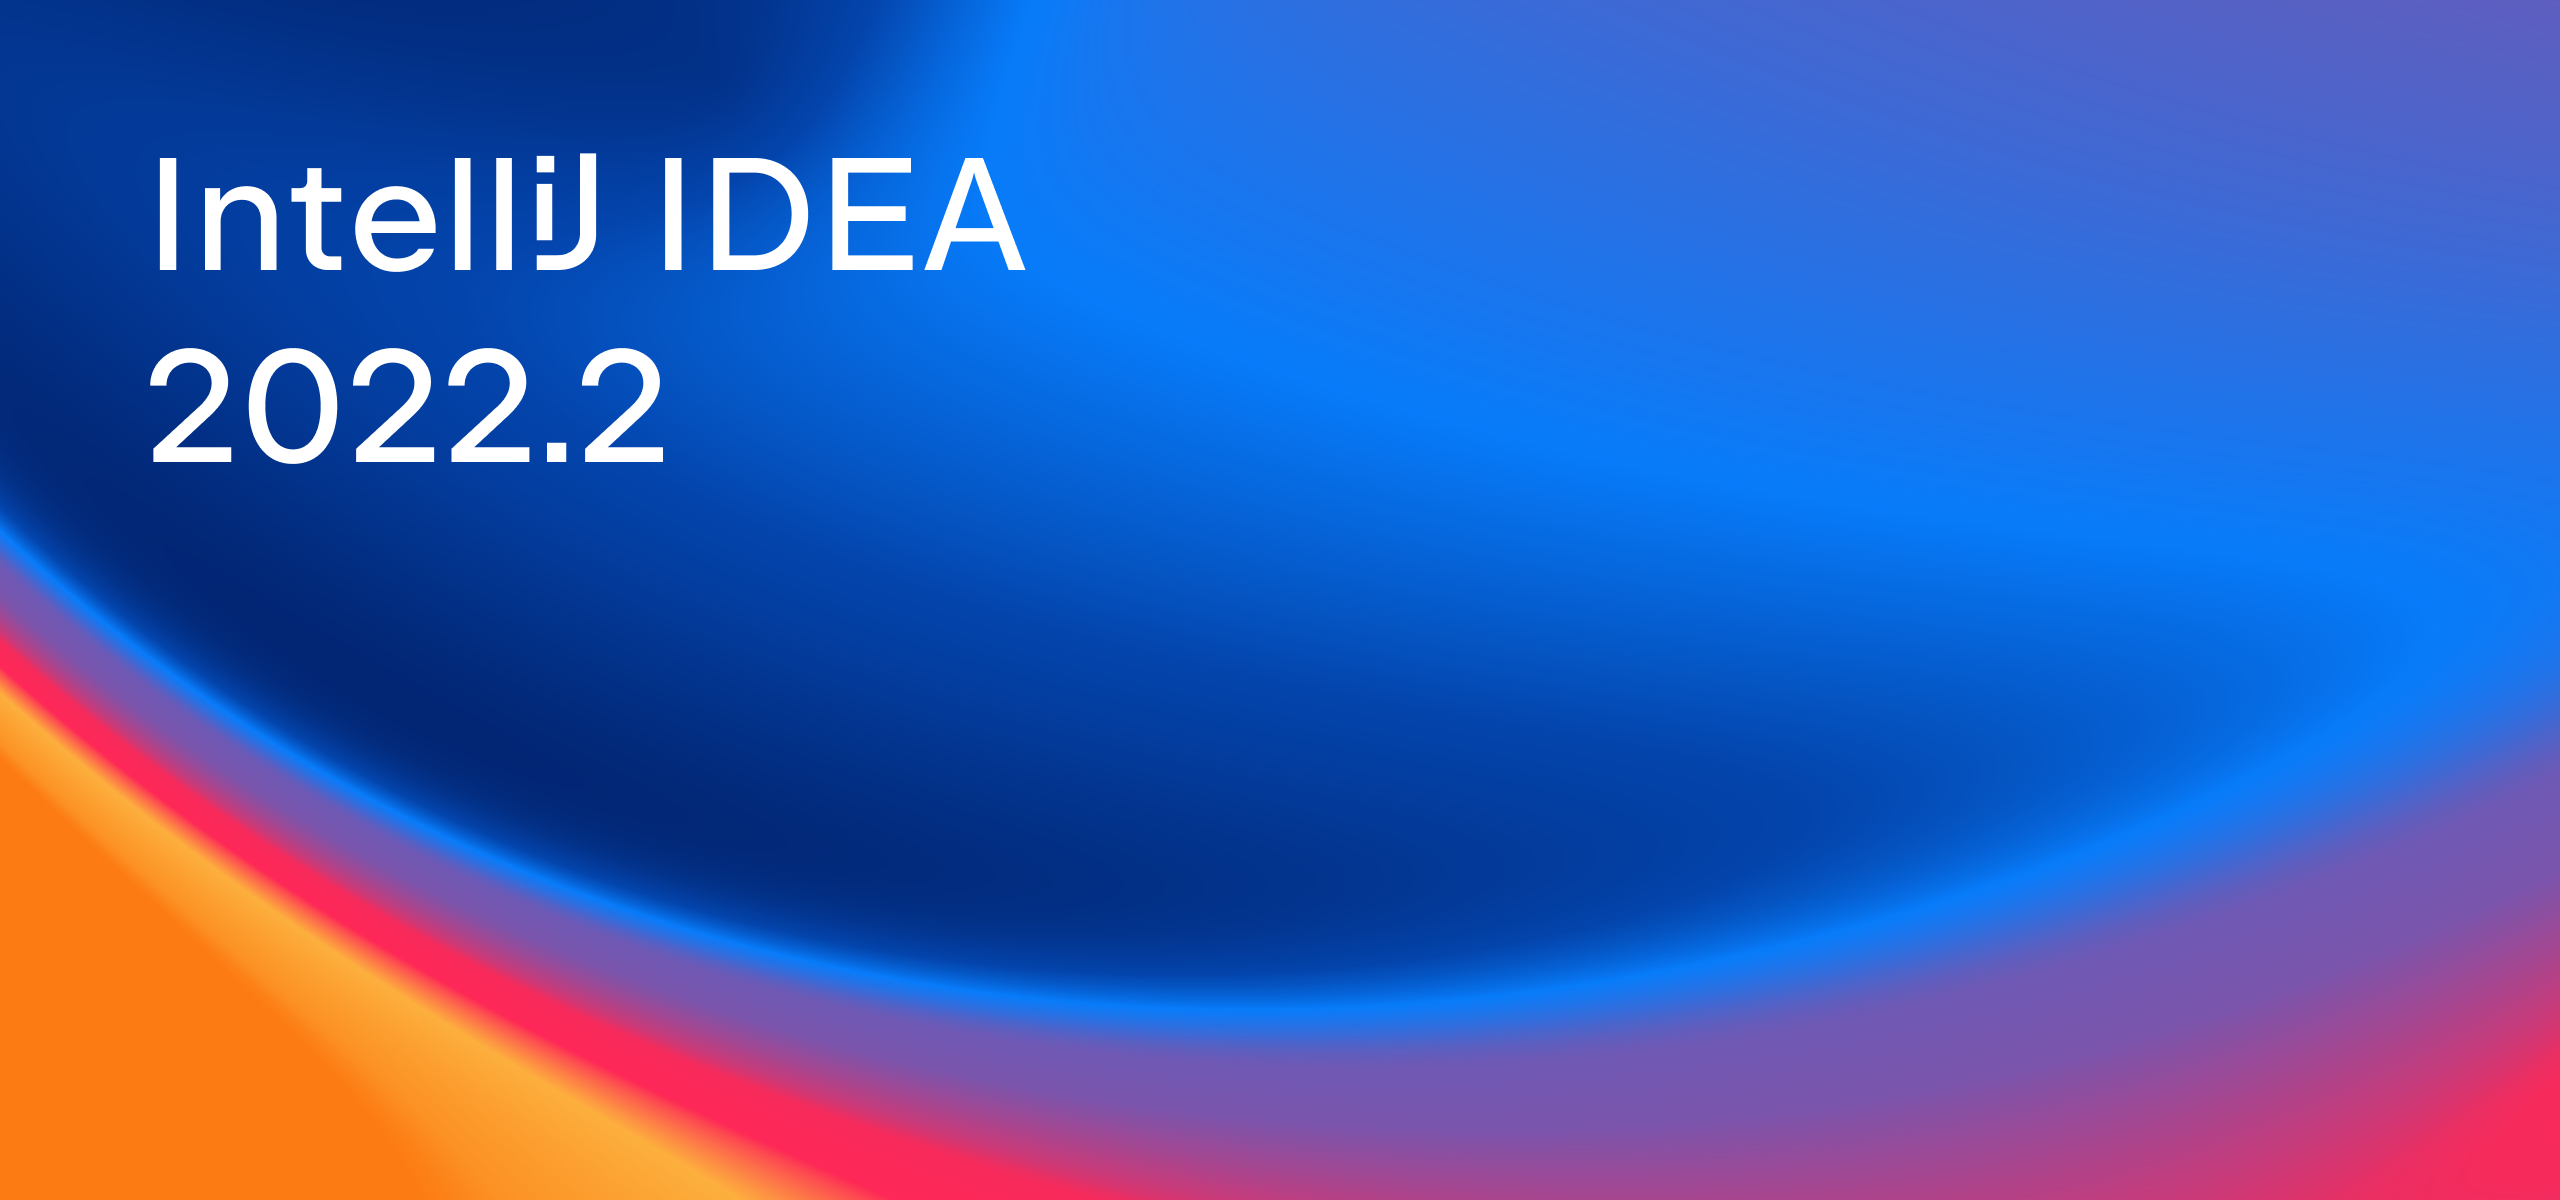 IntelliJ IDEA 2022.2正式发布，支持Spring Boot 3和Spring 6